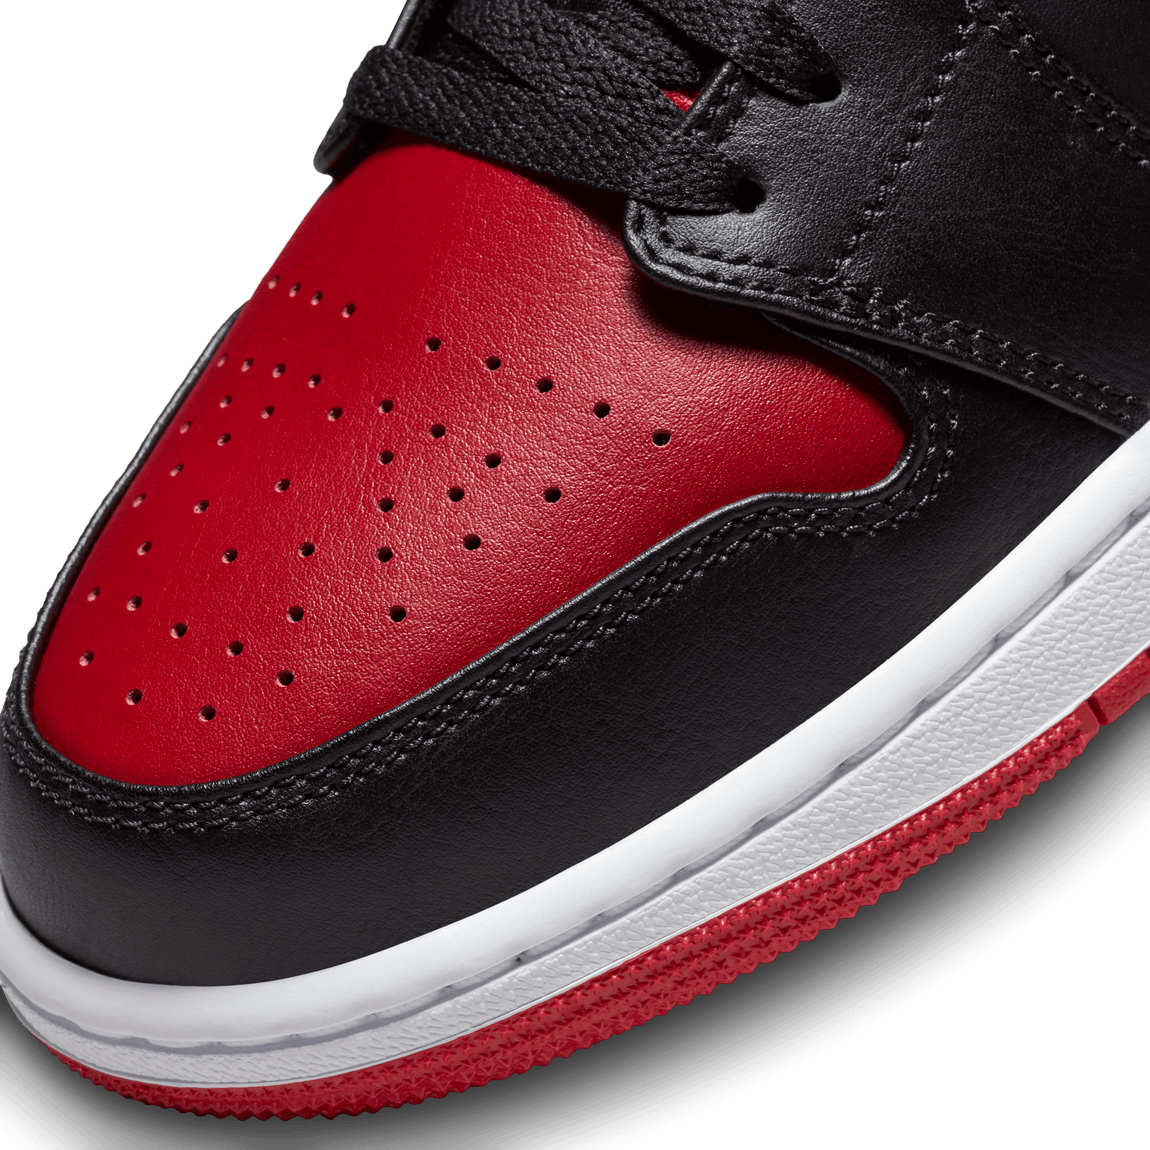 Air Jordan 1 Low (Black/Gym Red-White) - Air Jordan 1 Low (Black/Gym Red-White) - 